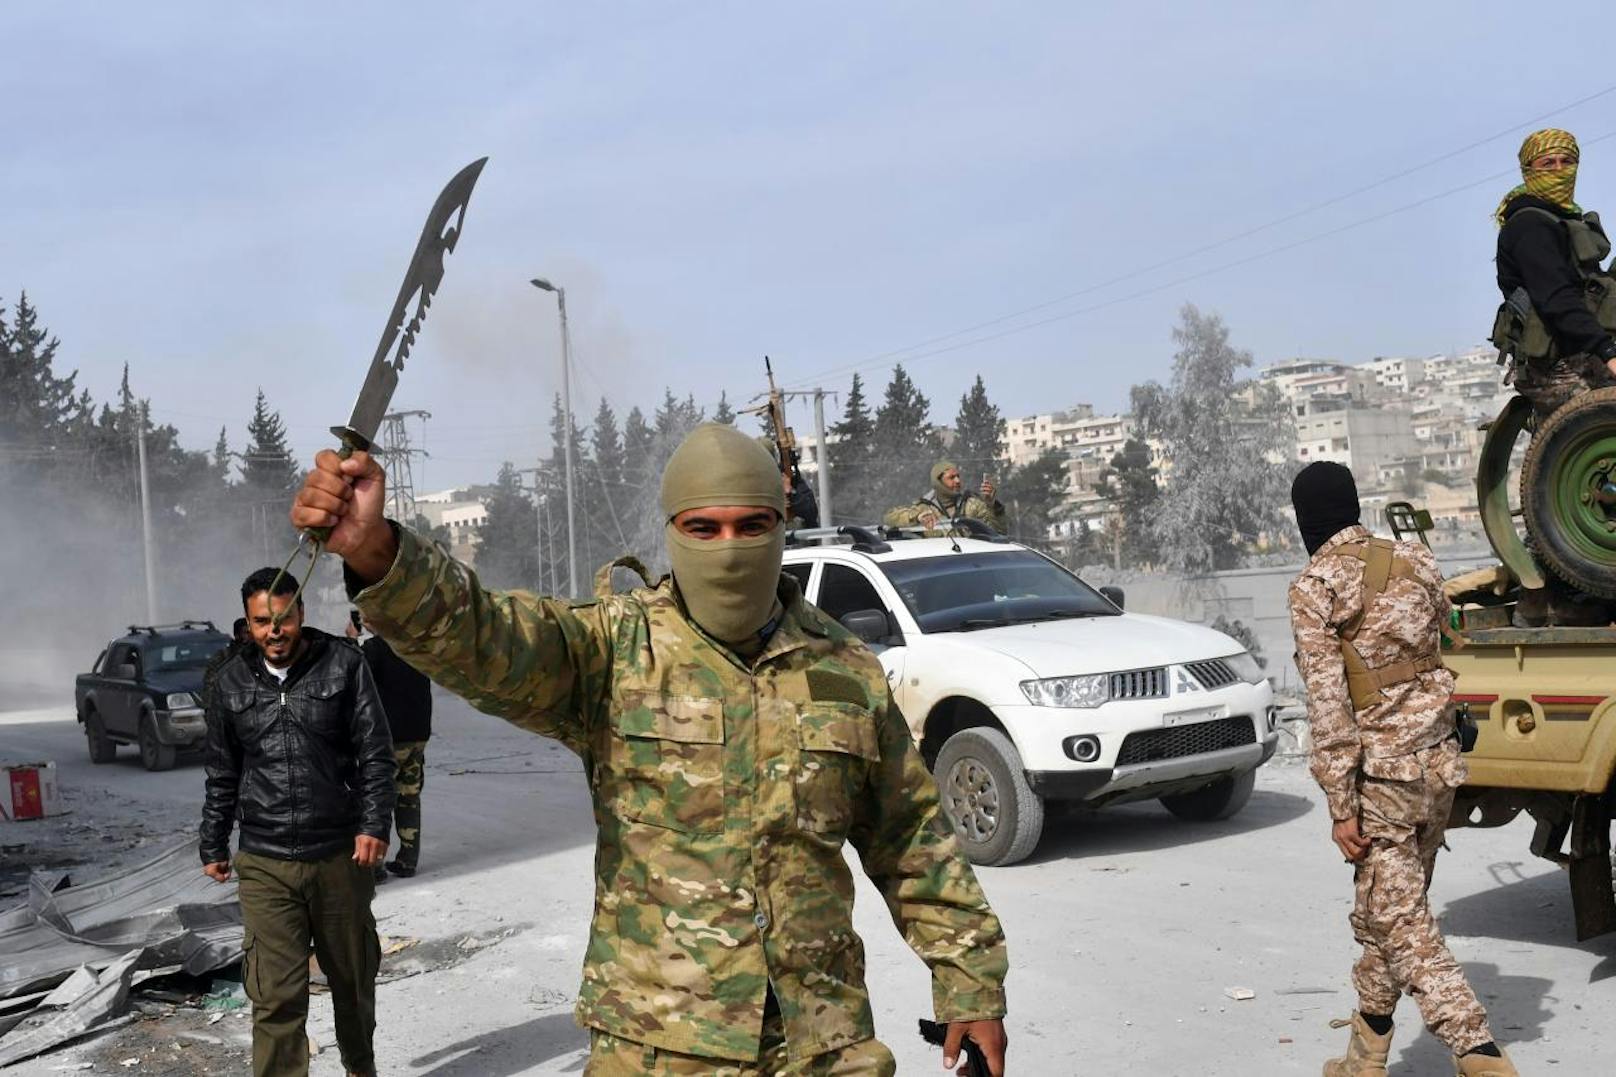 Nach der Eroberung von Afrin marschierten syrische Rebellenkämpfer in Afrin ein und plünderten. Viele der Rebellen zeigen unverhohlen den islamistischen Finger nach oben, eine Geste, die auch typisch für IS-Dschihadisten ist. Mit ihren langen Haaren und Bärten sowie den martialischen Messern erinnern die Kämpfer weniger an die Rebellen der "Freien Syrischen Armee" (FSA), deren Titel sie kapern, sondern an Dschihadisten diverser islamistischer Milizen.